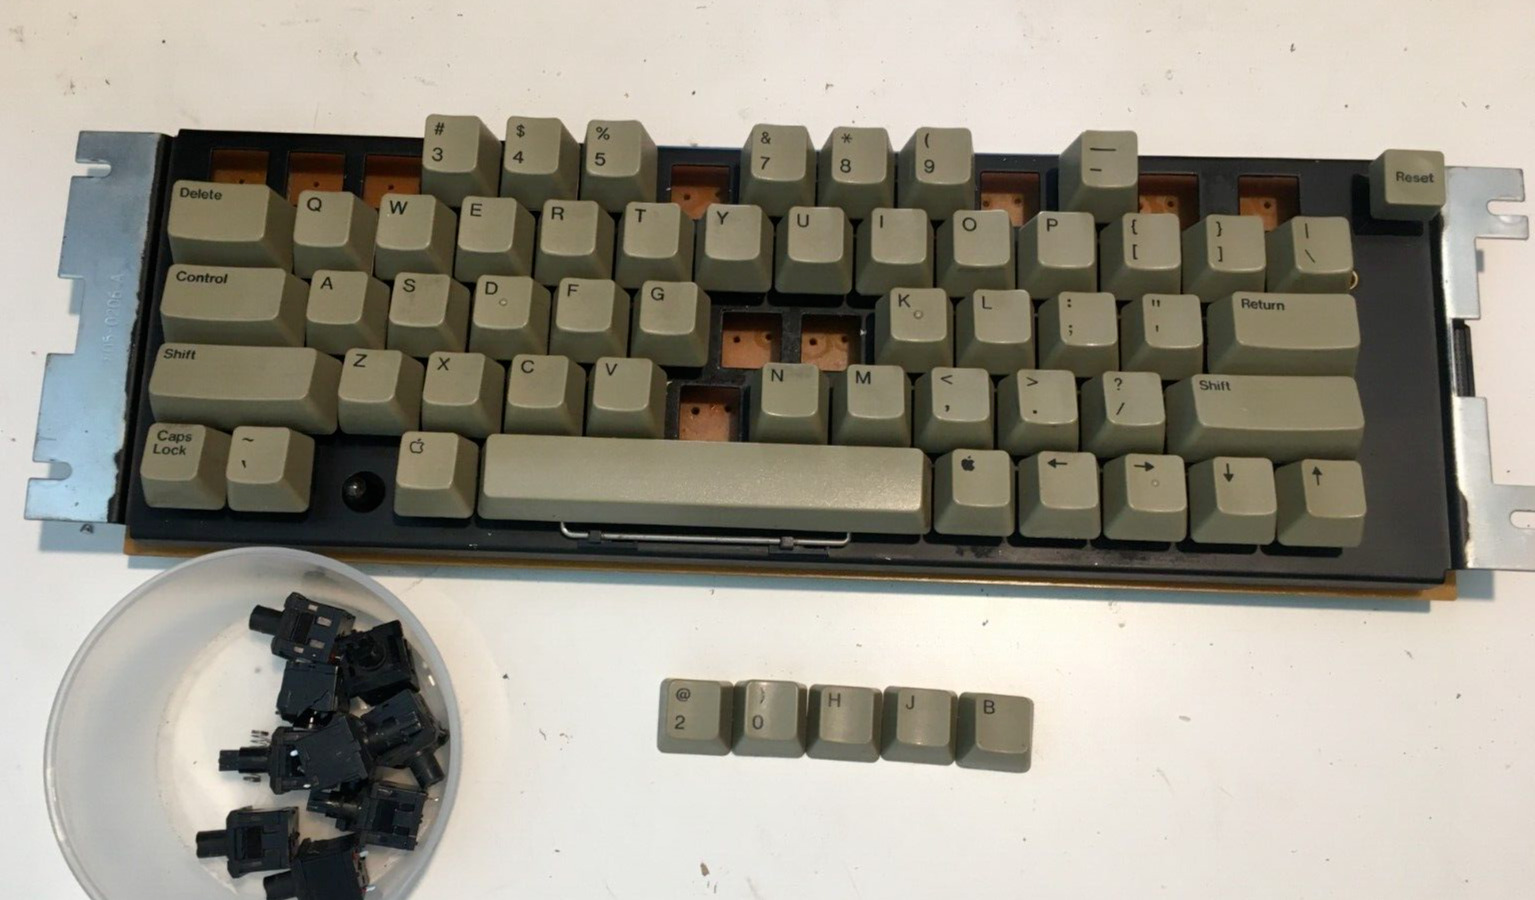 Vintage Apple IIe Computer Keyboard. For Parts or repair.